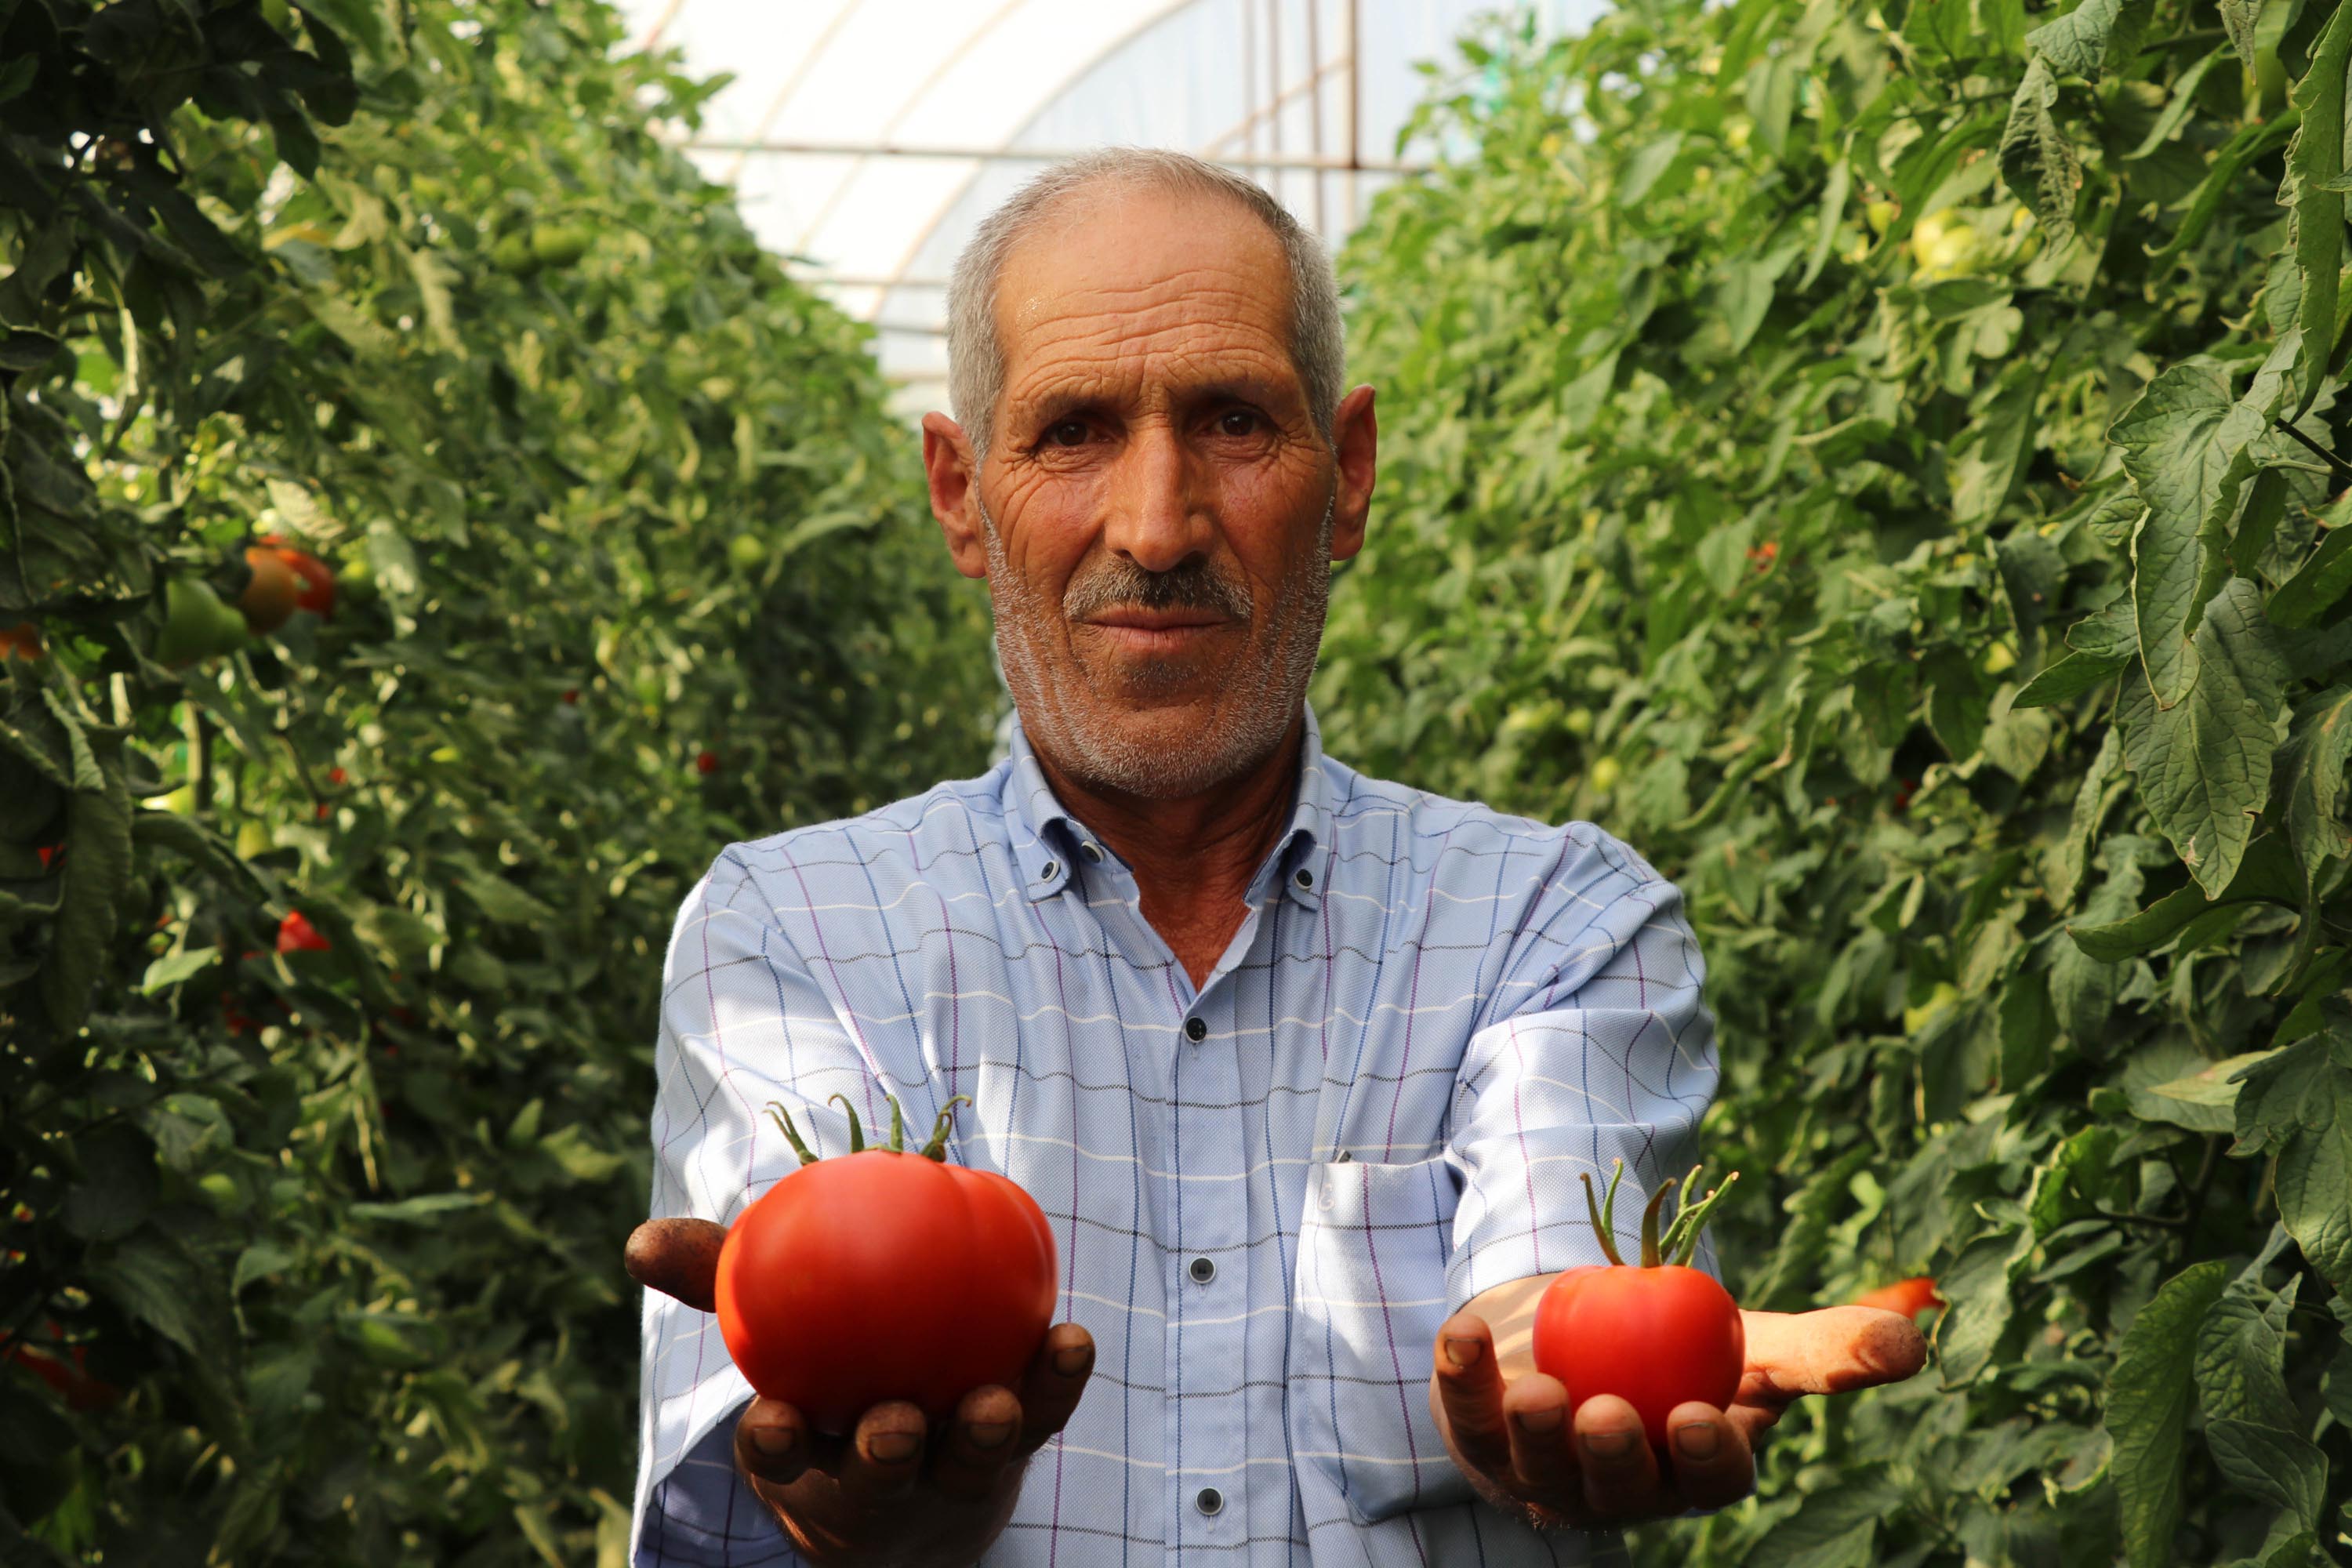 bombus-arilari-kullanilarak-yetistirilen-domateslerin-tanesi-1-kilo-geliyor-4707-dhaphoto11.jpg